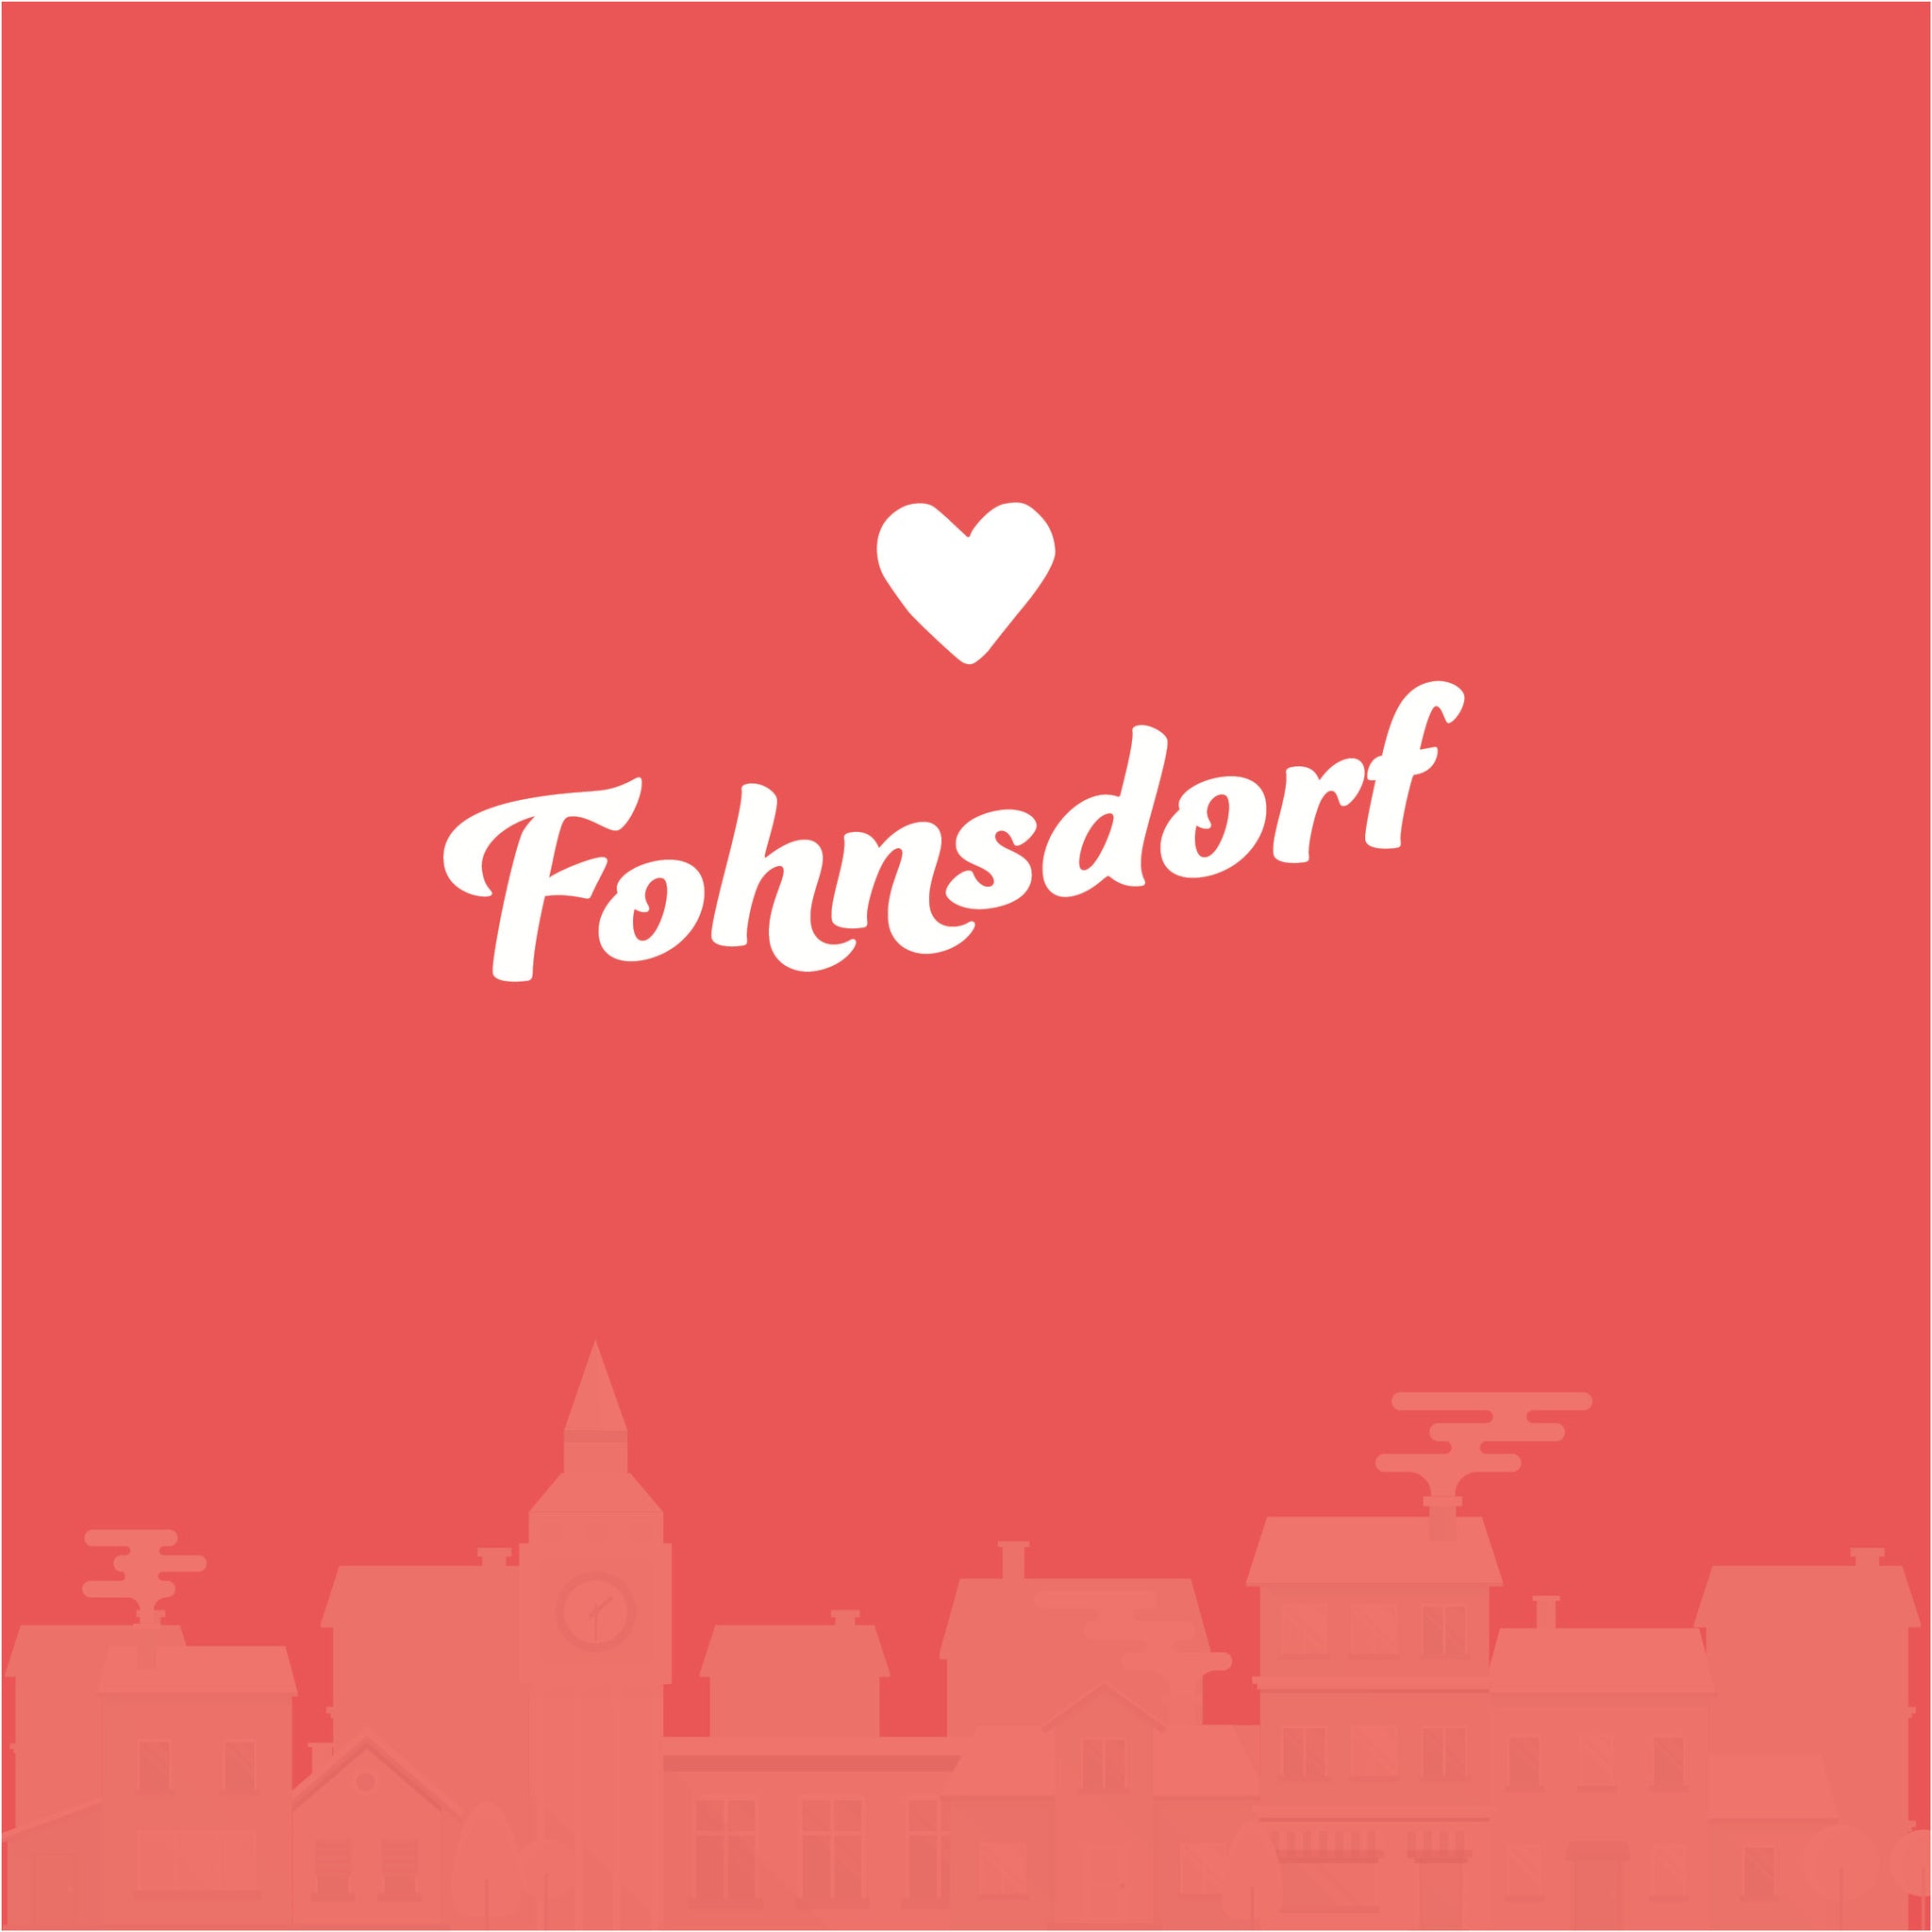 Fohnsdorf